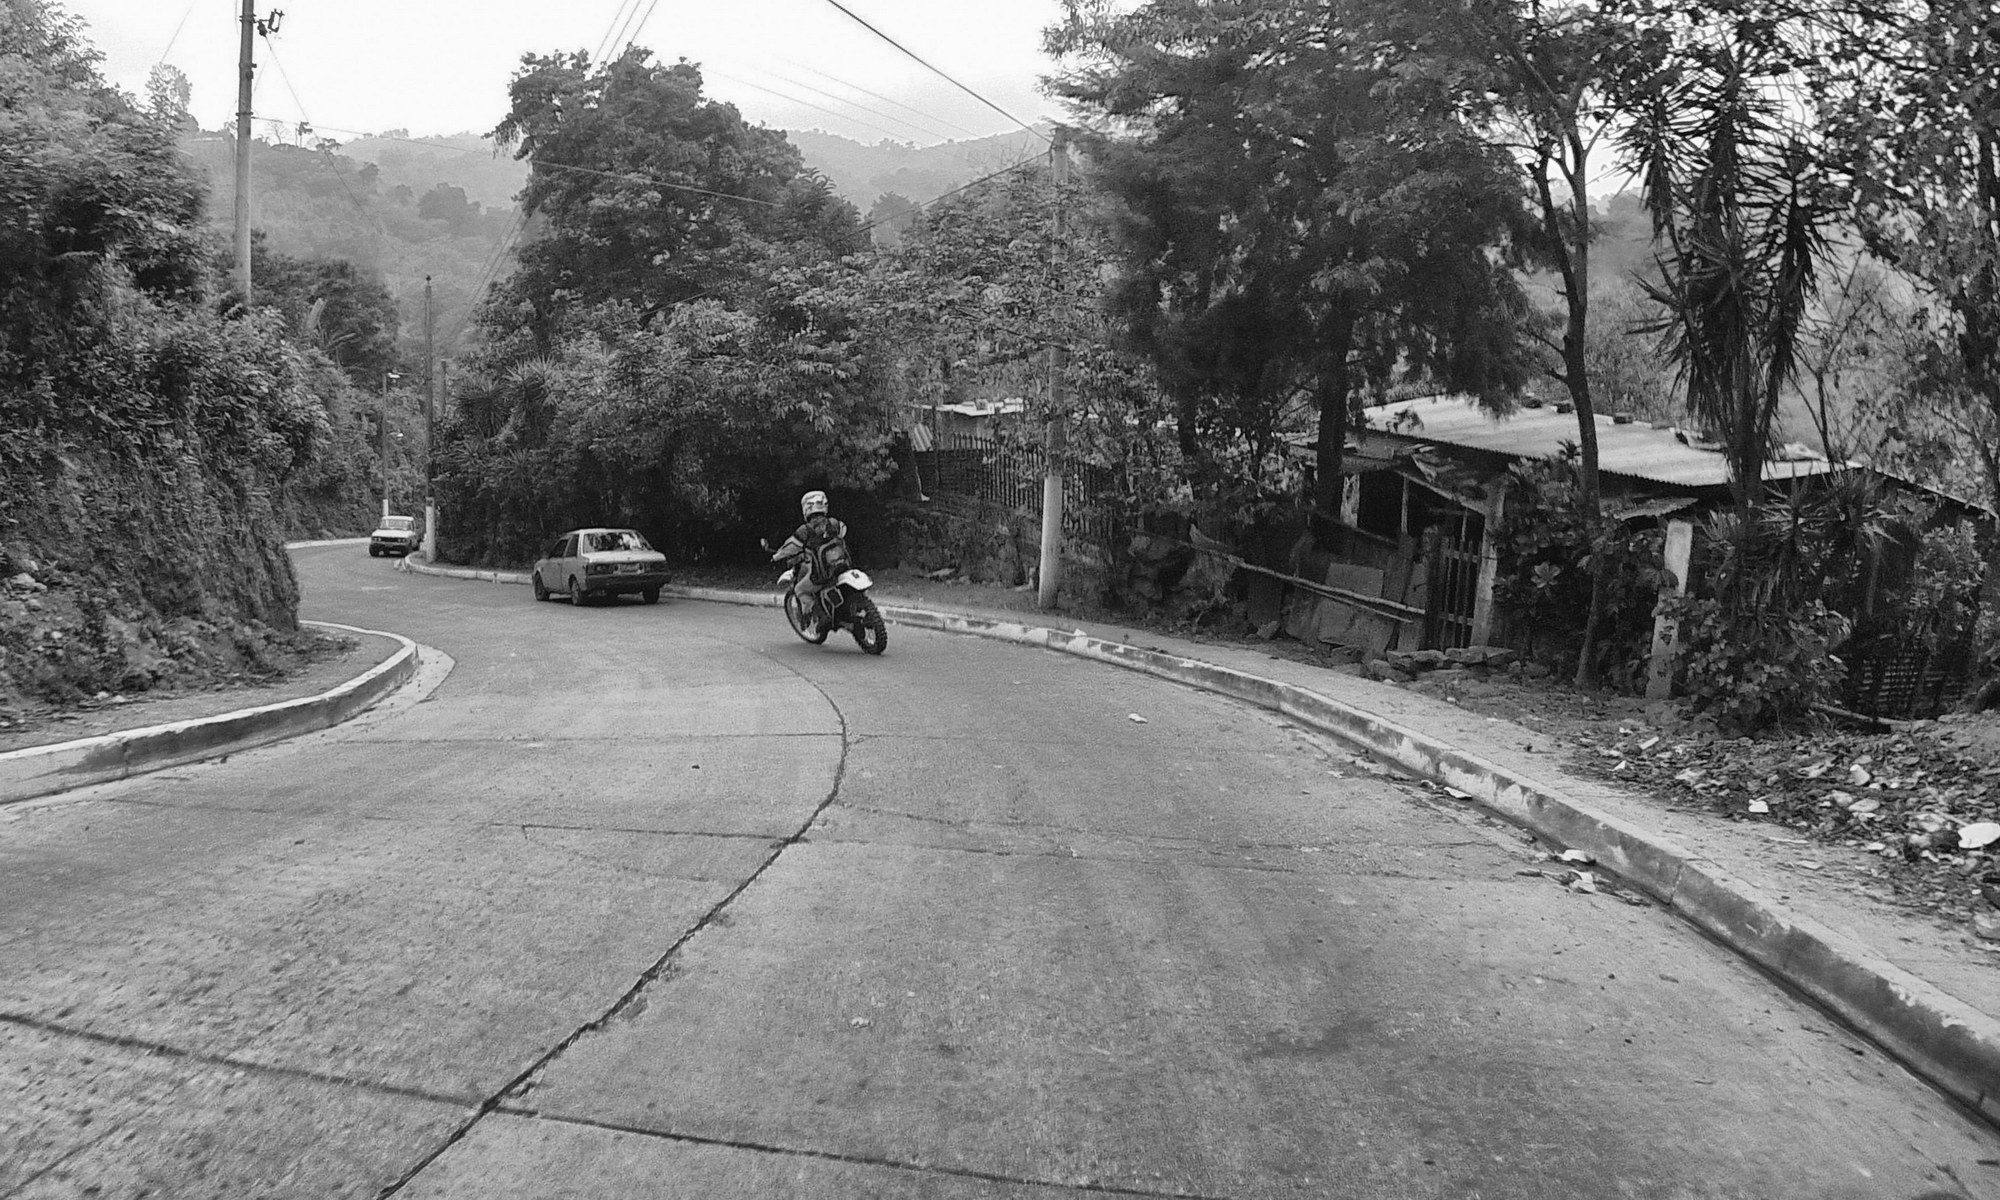 Some great motorcycle rides in El Salvador!